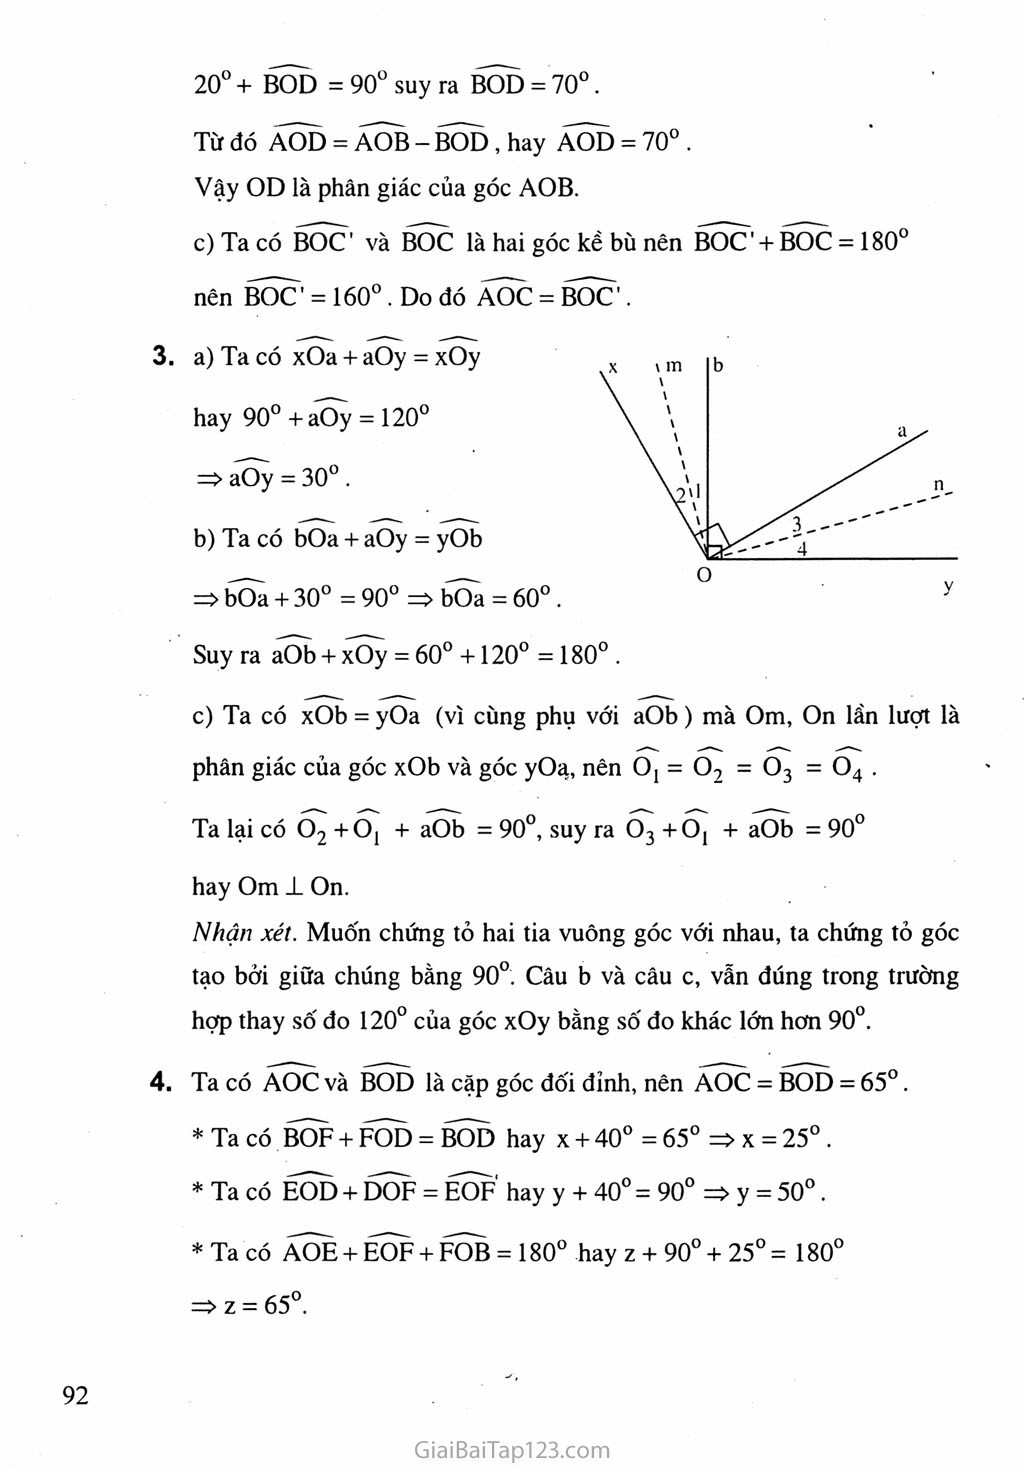 Bài 2. Hai đường thẳng vuông góc trang 5